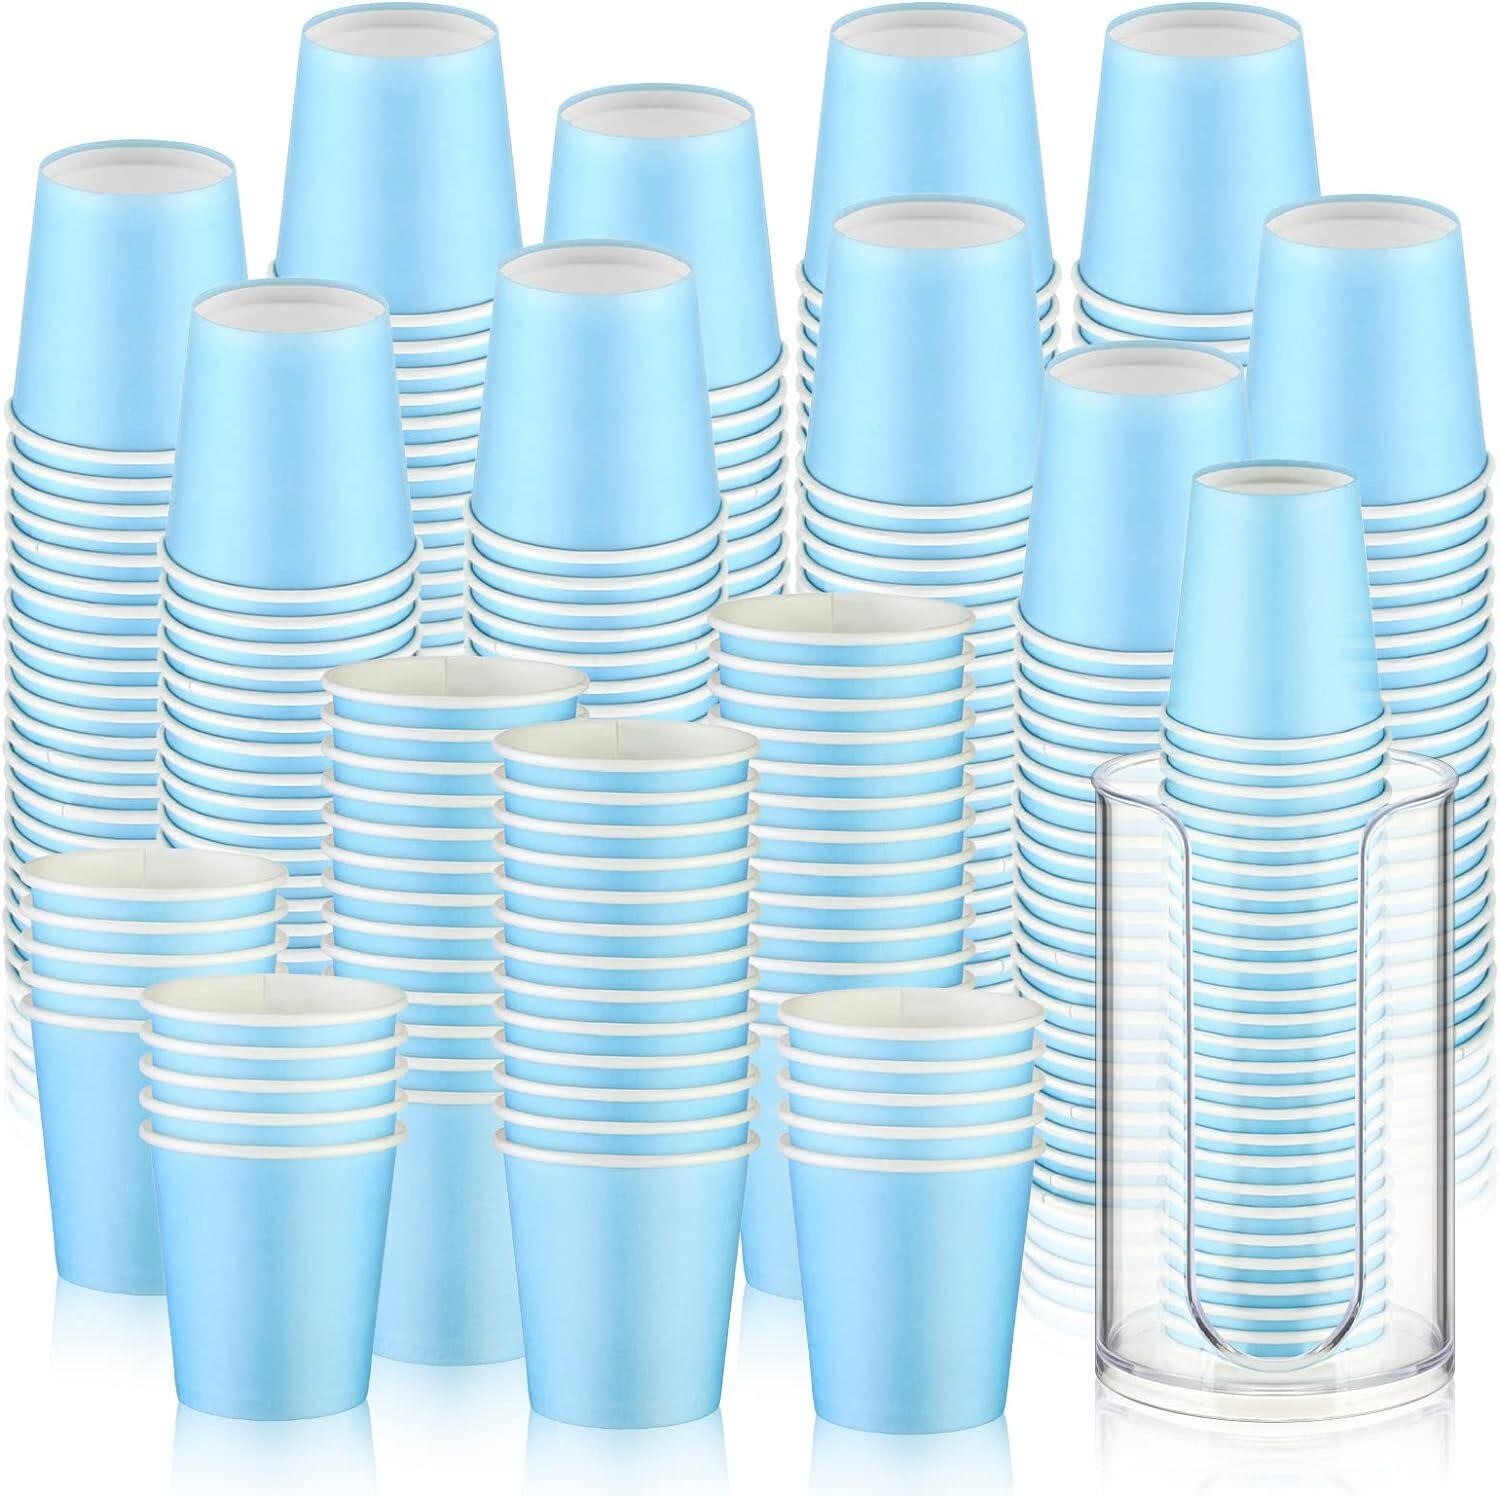 501 Pcs 3 oz Bathroom Cups and Dispenser Set  Blue